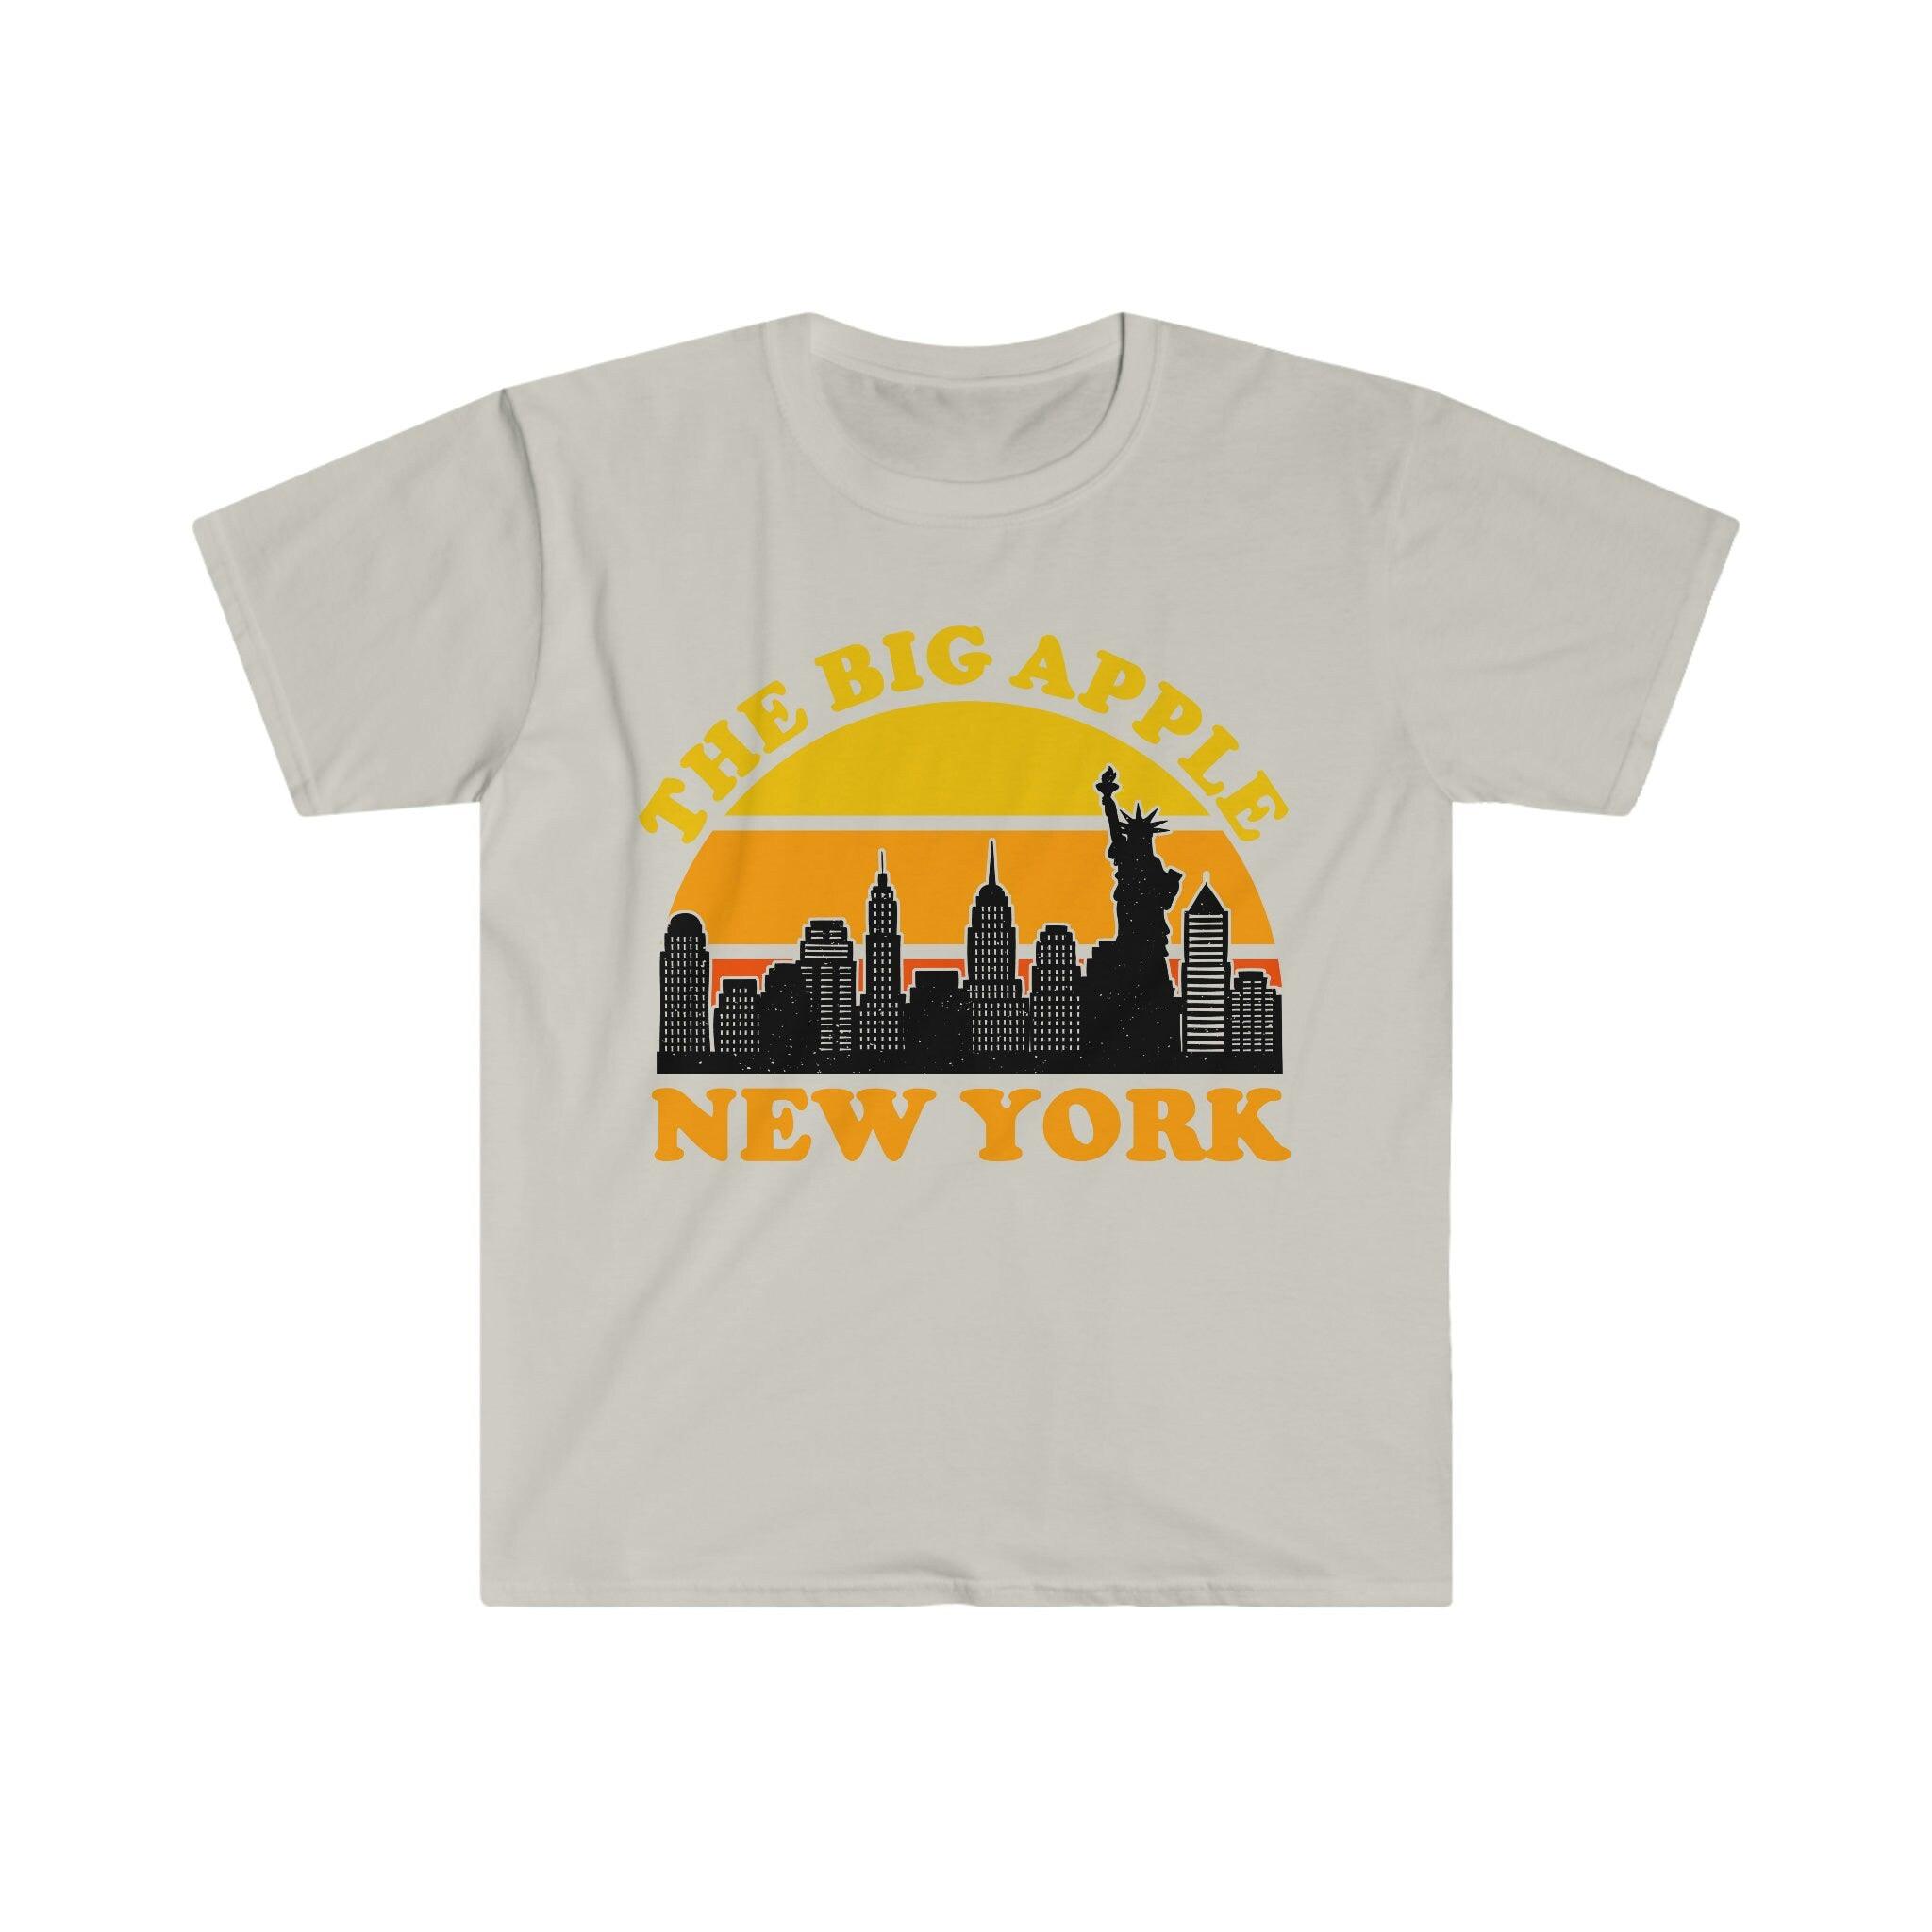 Үлкен алма Нью-Йорк | Ретро күн батуы футболкалары, Нью-Йорк қаласының Skyline сувенир футболкасы, NYC кештеріне арналған костюм, Visit Trip Travel NY, Brooklyn bridge, city skyline, manhattan, new york, new york city, new york city art, new york gift, new york print, Нью-Йорк аспан сызығы, Нью-Йорк, Нью-Йорк сыйлығы, Нью-Йорк көкжиегі, бостандық мүсіні, Ти, футболкалар - plusminusco.com